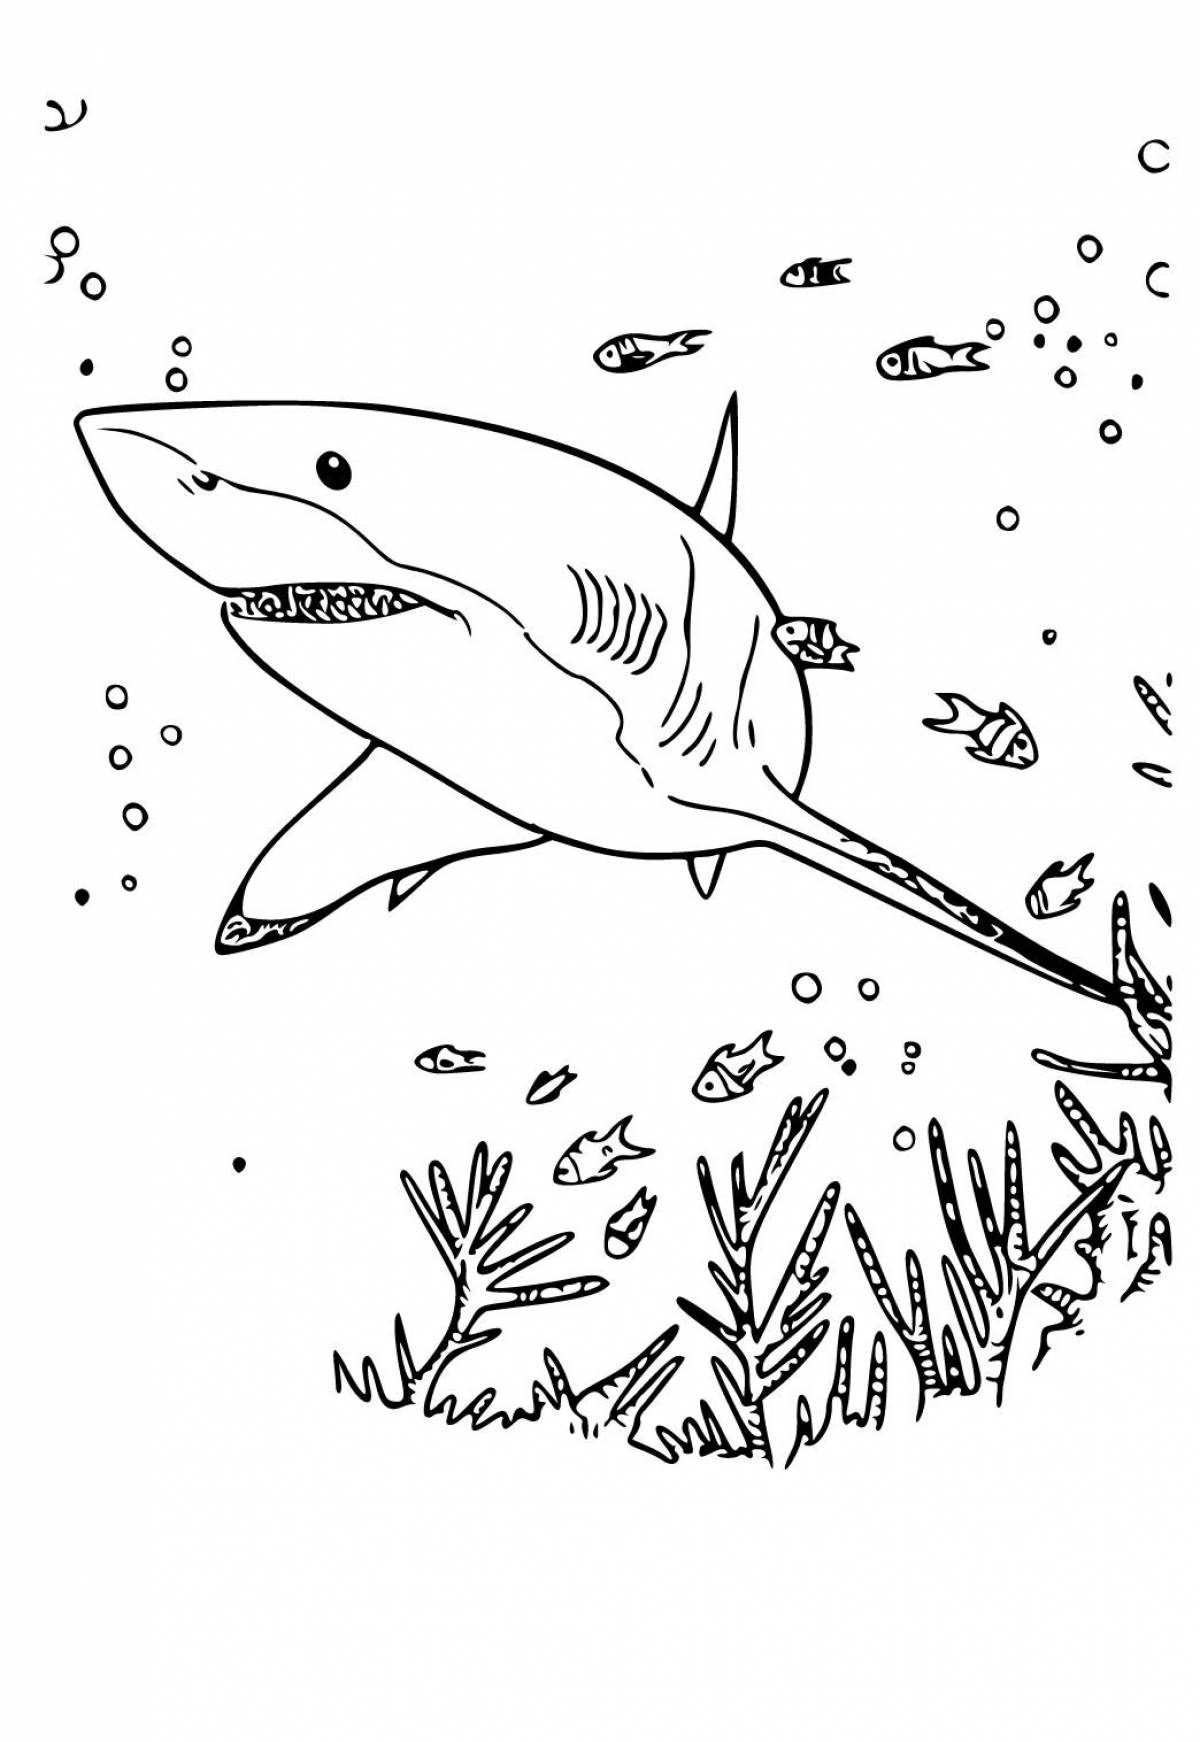 Акула рисунок для детей раскраска